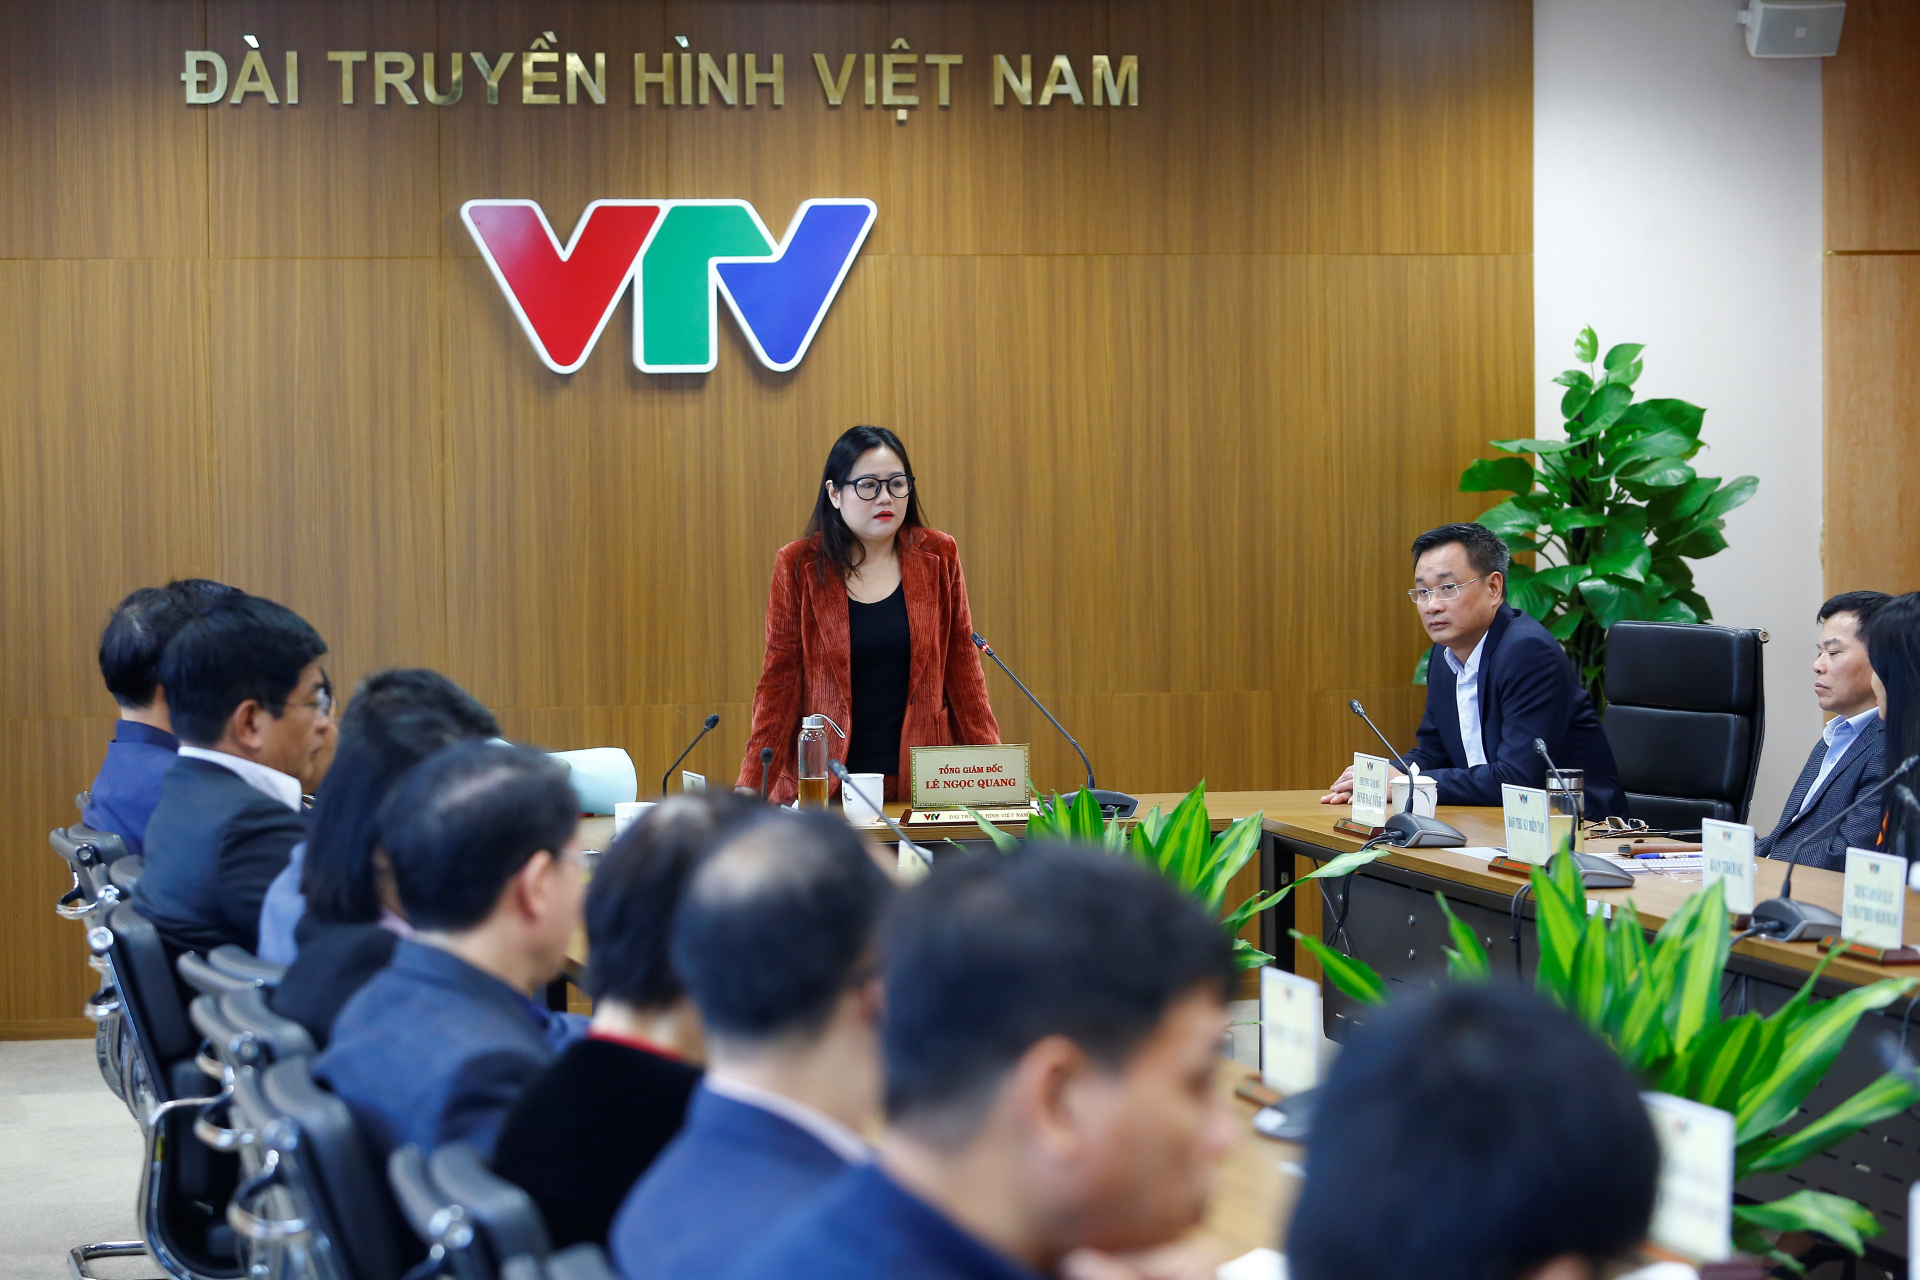 Bà Vũ Thanh Thủy - Tổng Biên tập Thời báo VTV - phát biểu tại lễ công bố